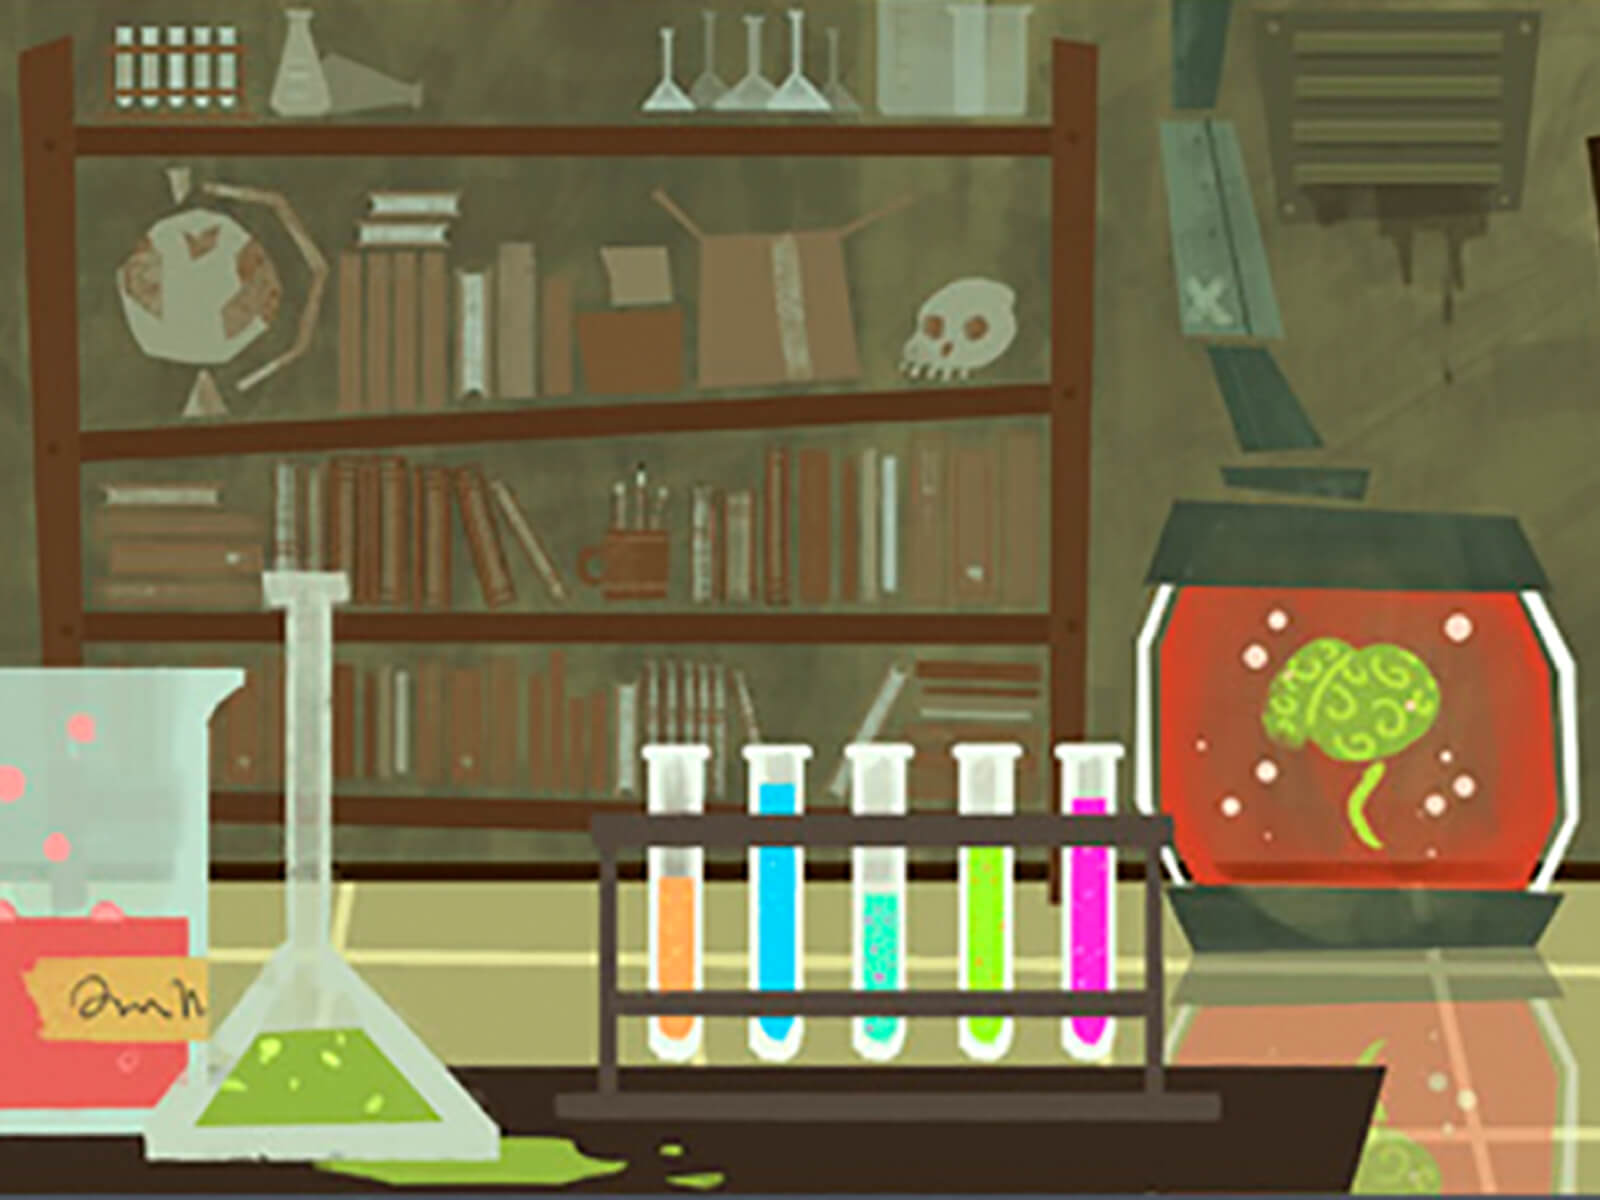 Panel de cuatro bocetos ambientales estilizados que representan un comedor, una finca, un laboratorio científico y un dormitorio infantil.